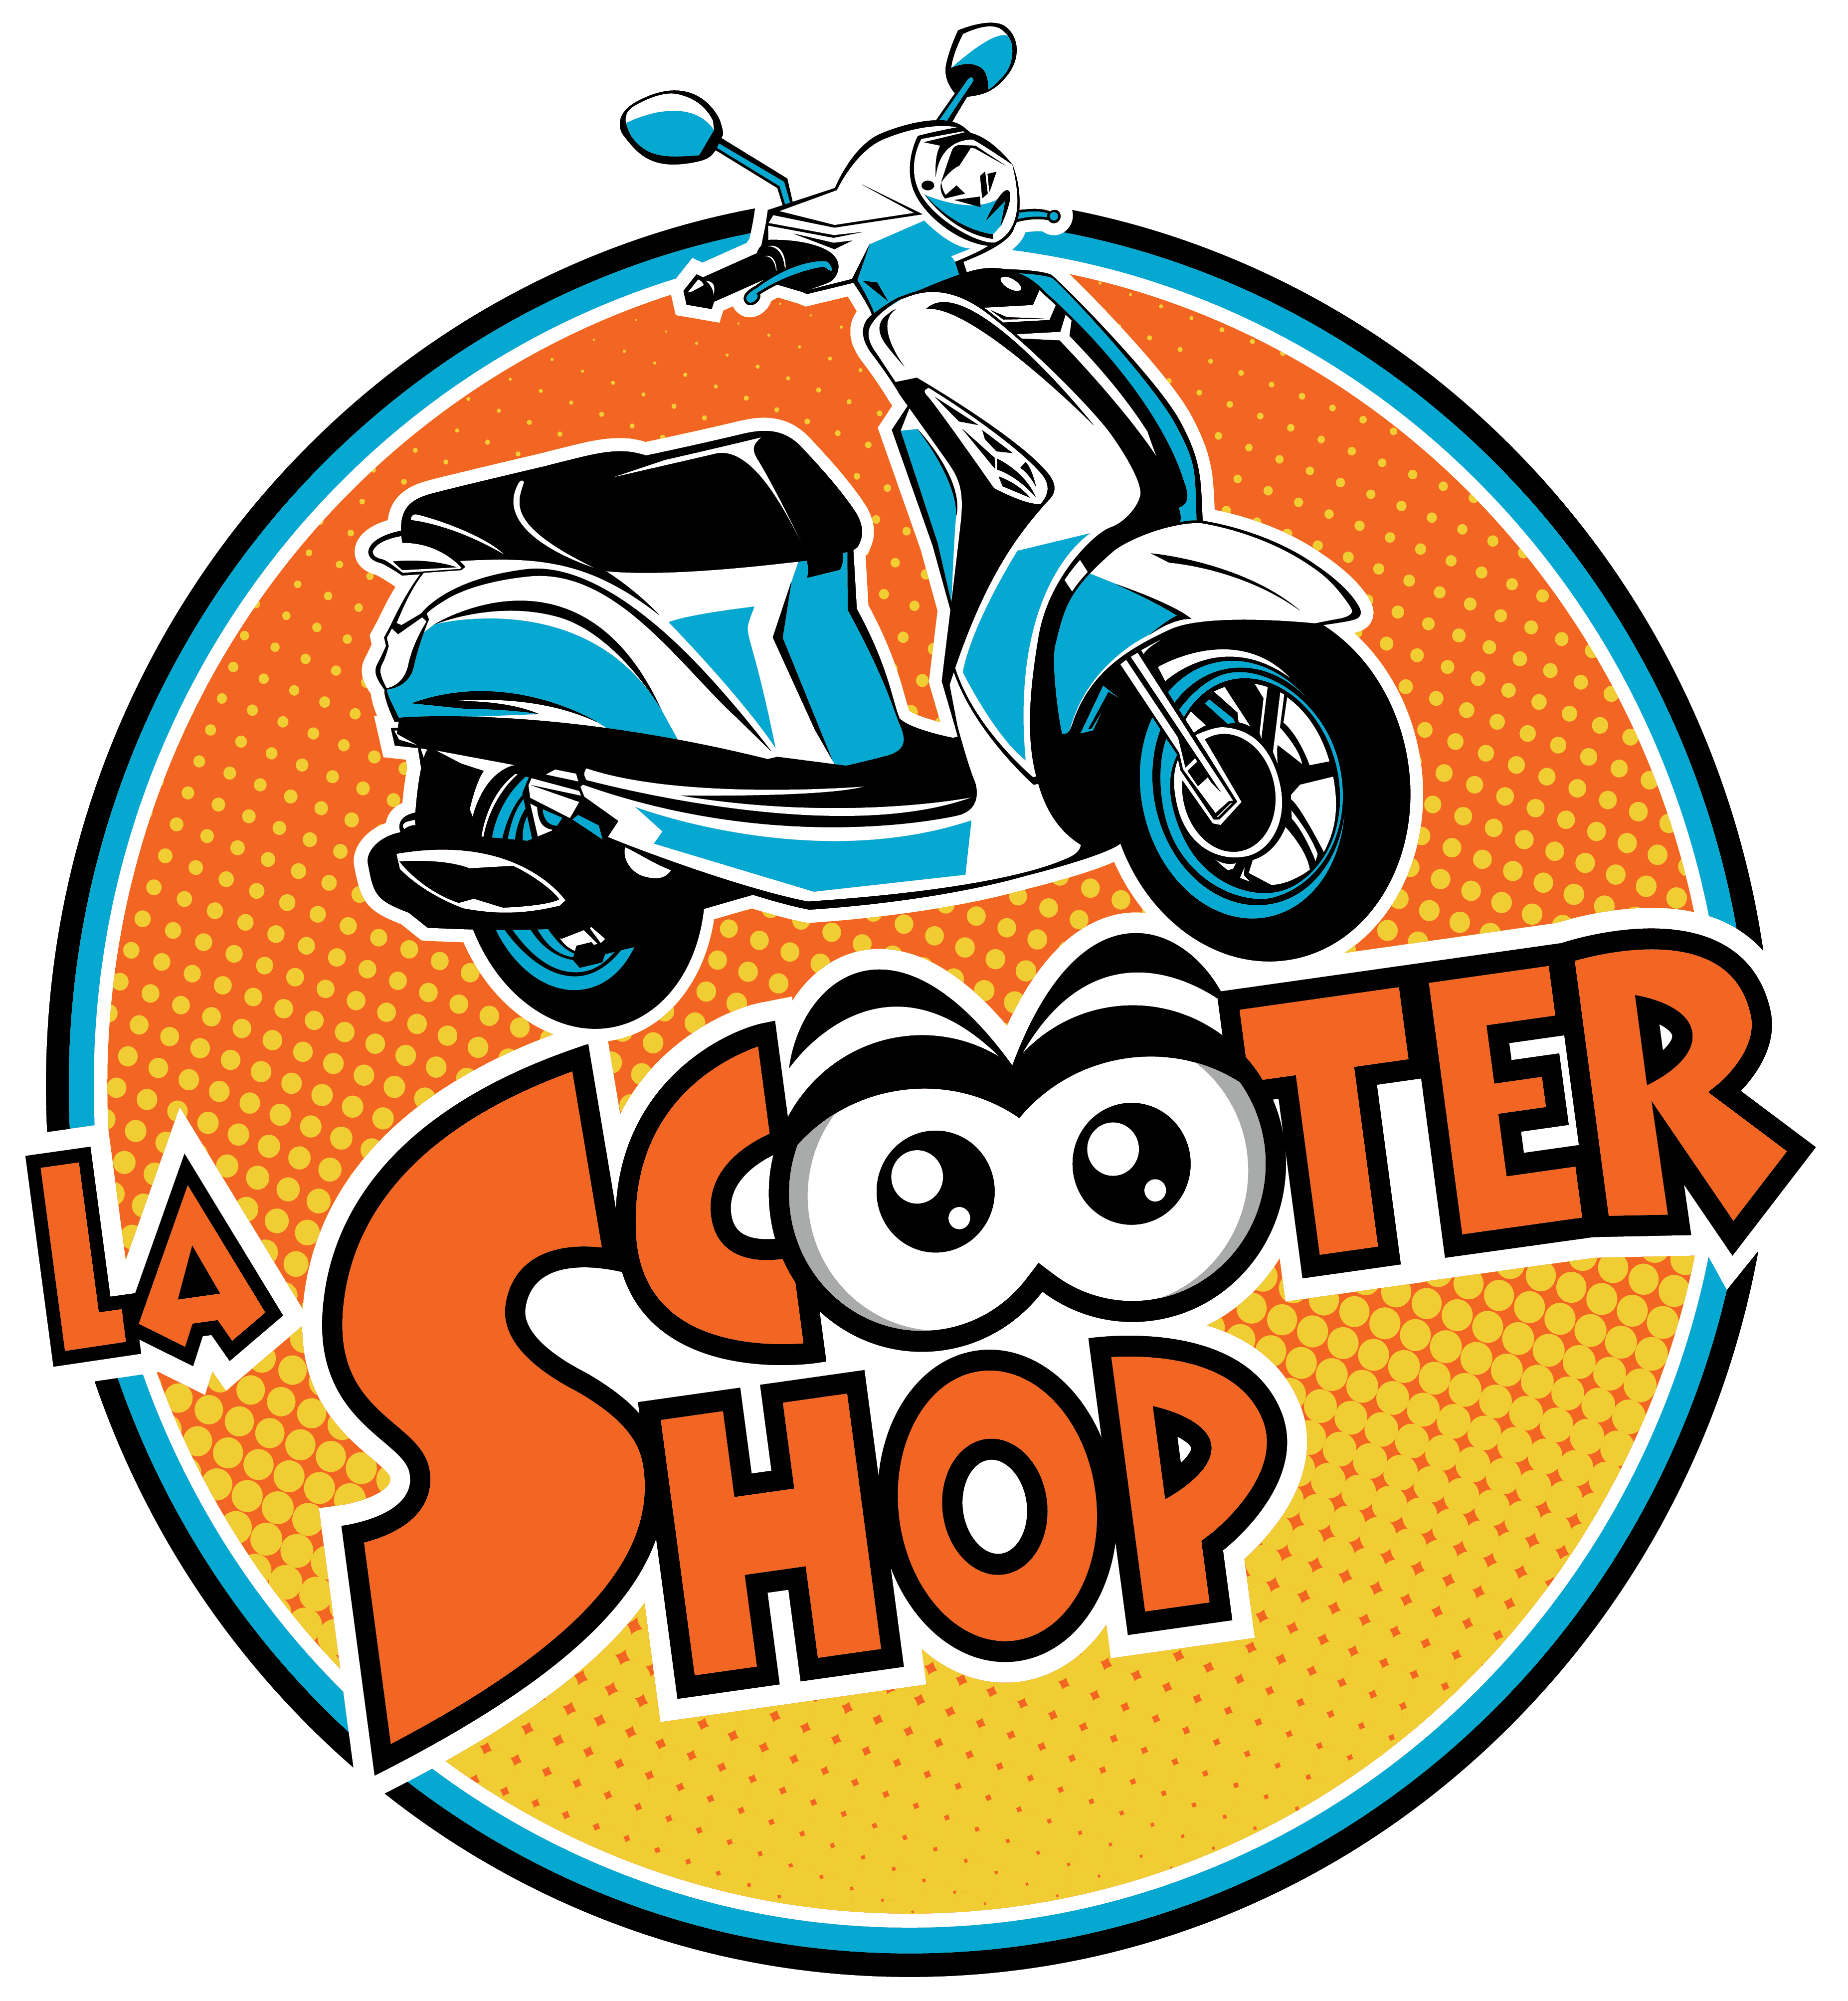 La Scootershop